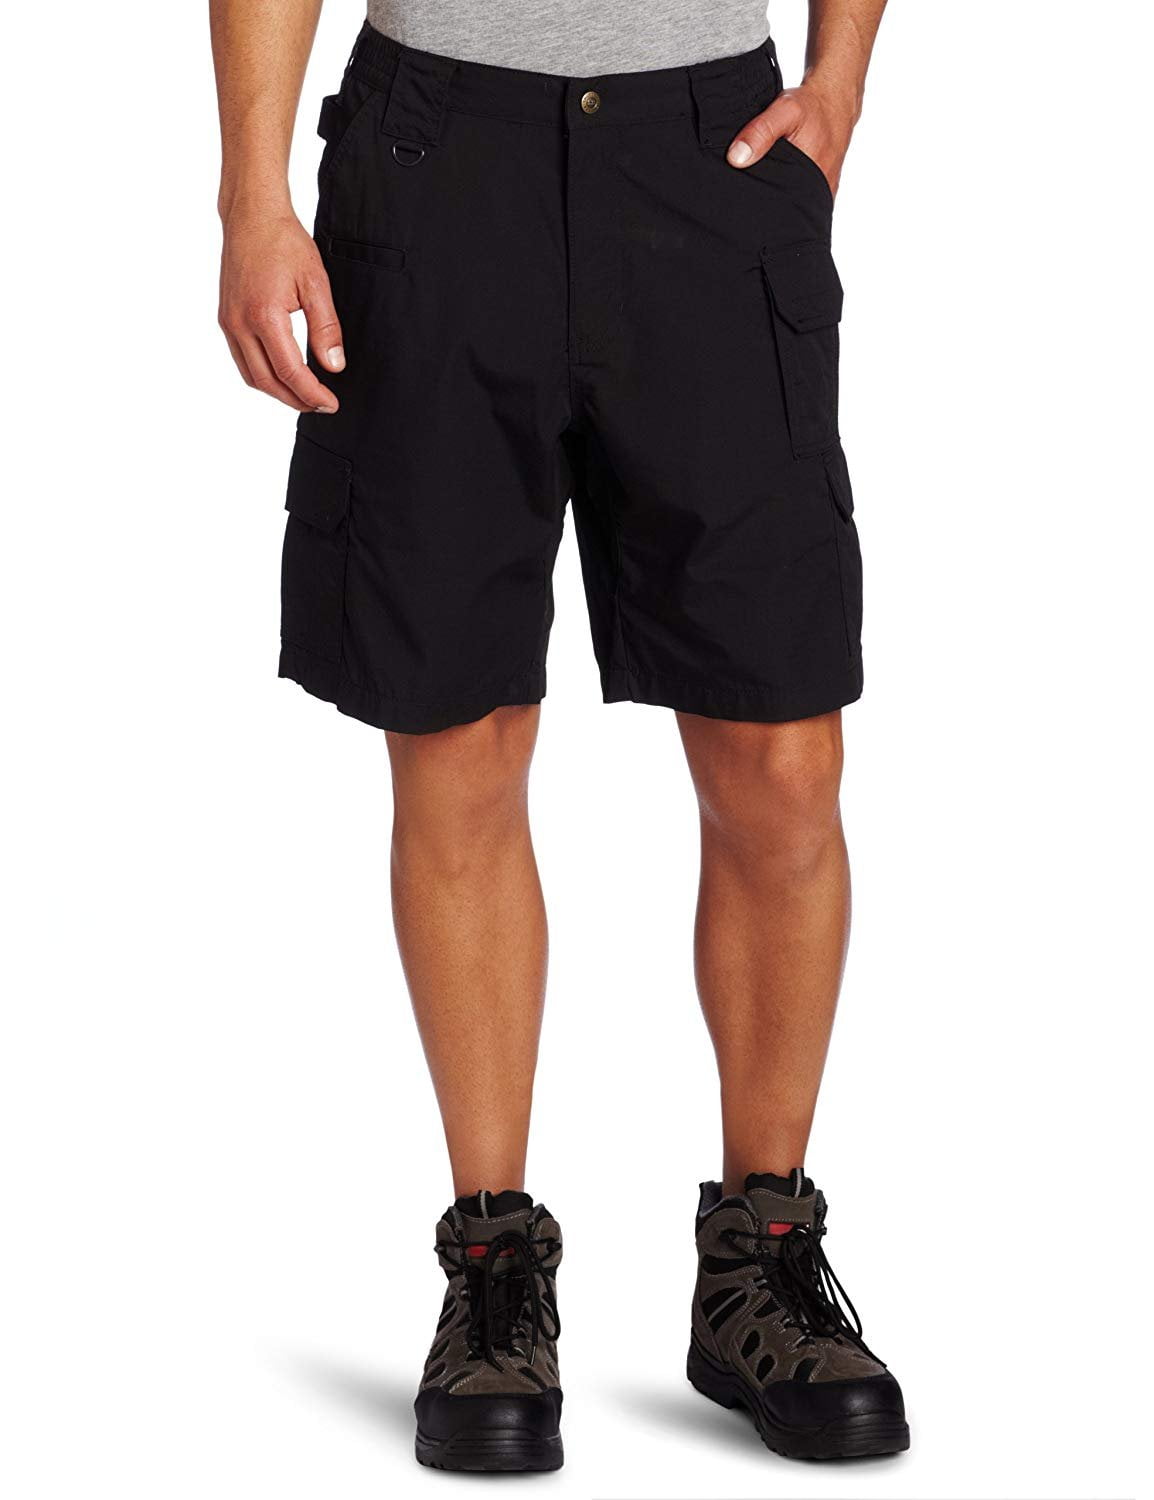 5.11 Tactical - 5.11 Tactical Men's Taclite Pro 9.5-Inch Shorts ...